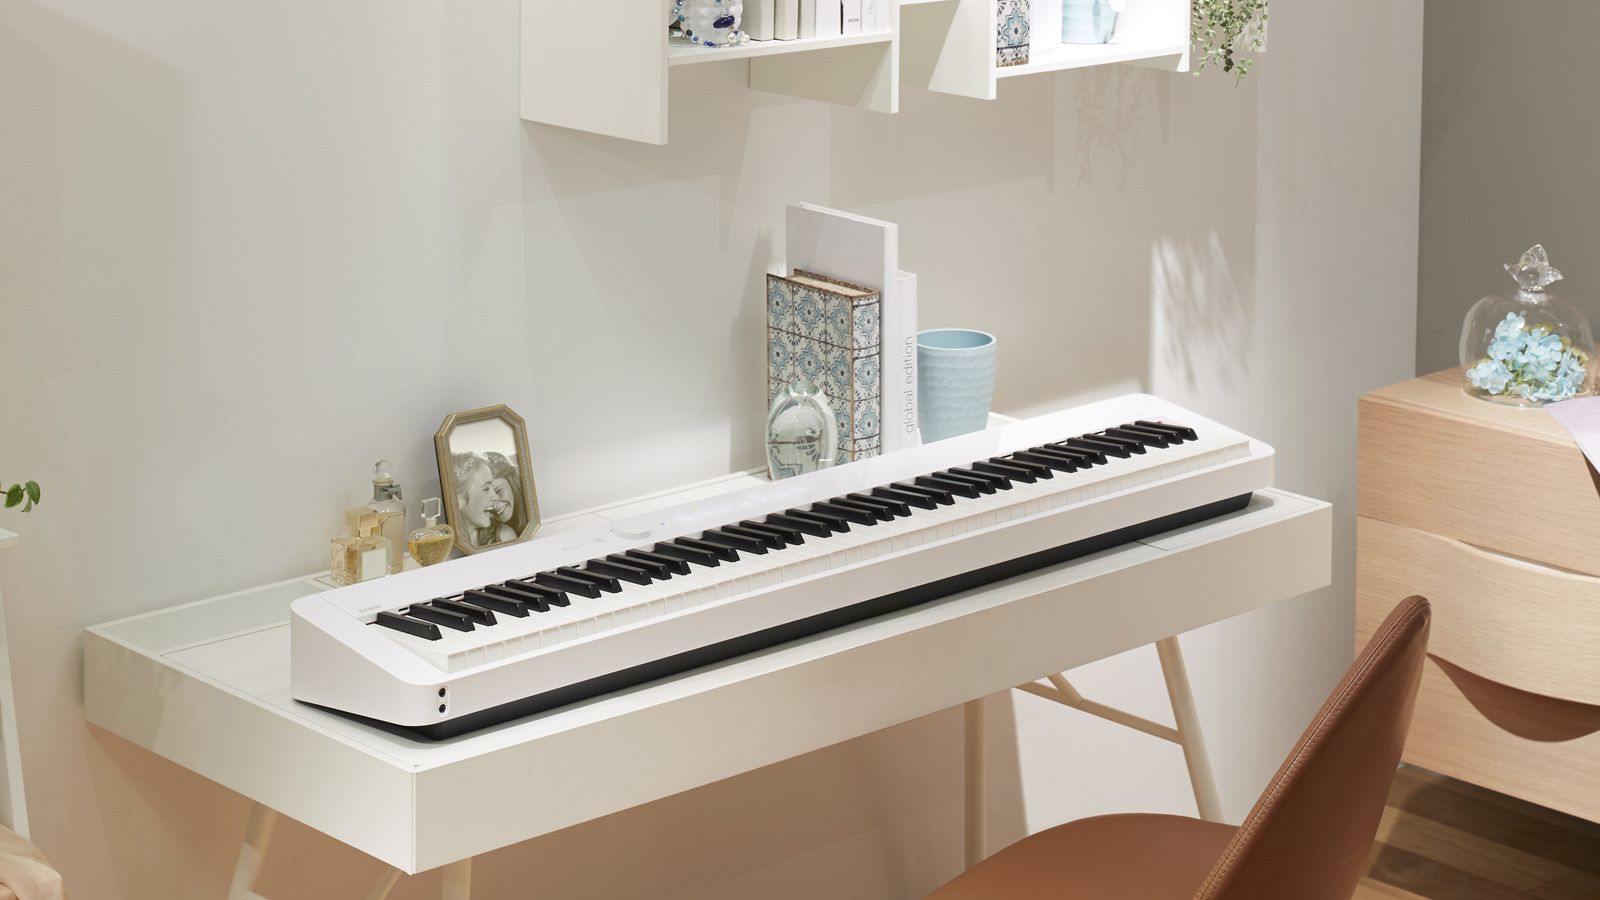 カシオ､6万円｢電子ピアノ｣で販売トップの理由 安価でコンパクト､｢ついで買い｣需要を喚起 | IT･電機･半導体･部品 | 東洋経済オンライン